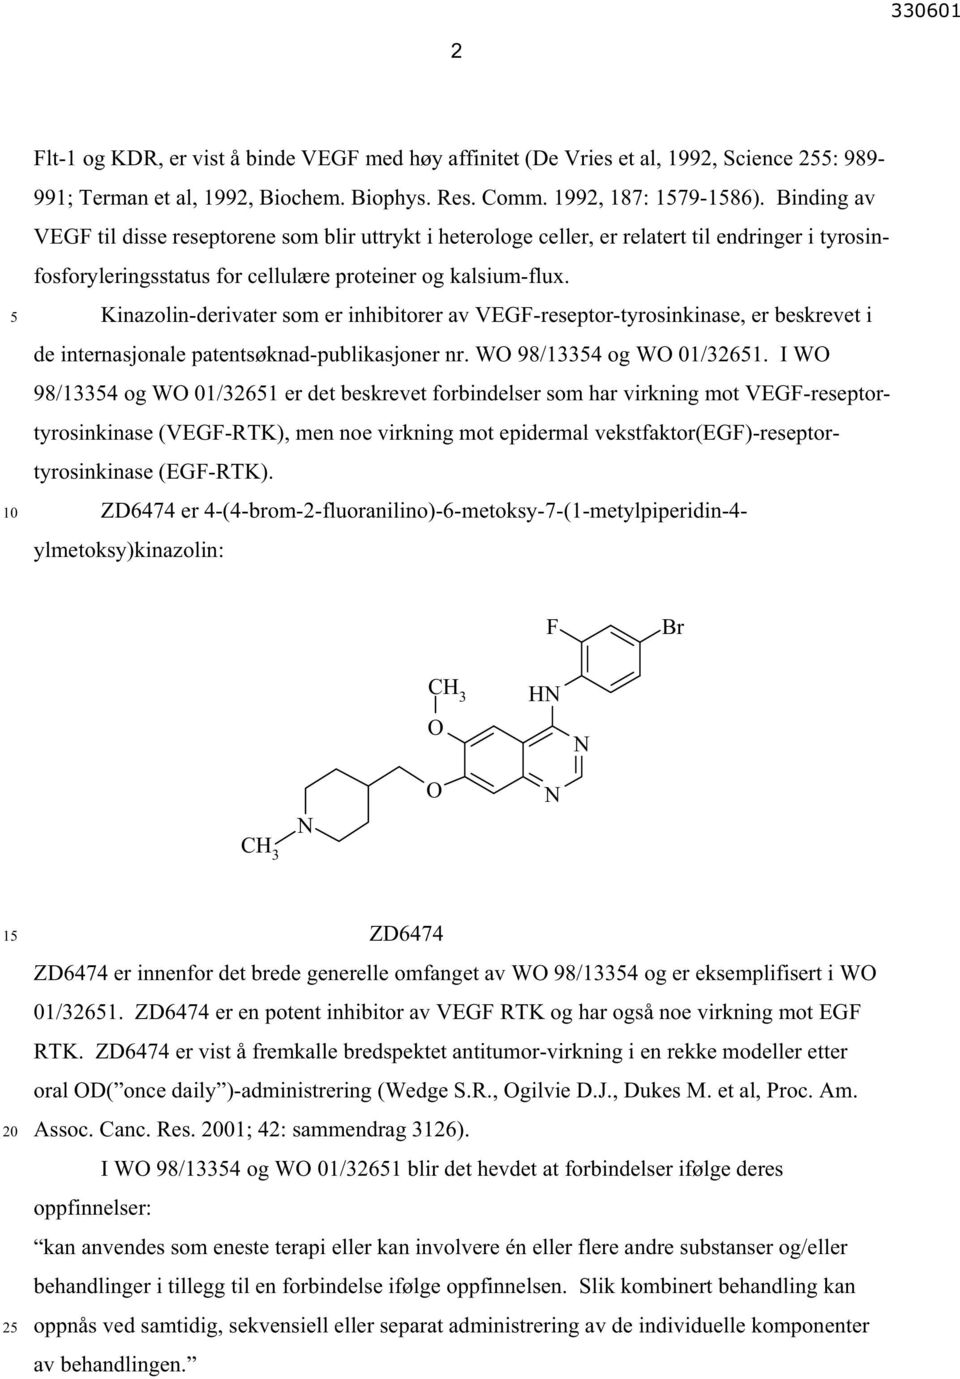 Kinazolin-derivater som er inhibitorer av VEGF-reseptor-tyrosinkinase, er beskrevet i de internasjonale patentsøknad-publikasjoner nr. WO 98/1334 og WO 01/3261.